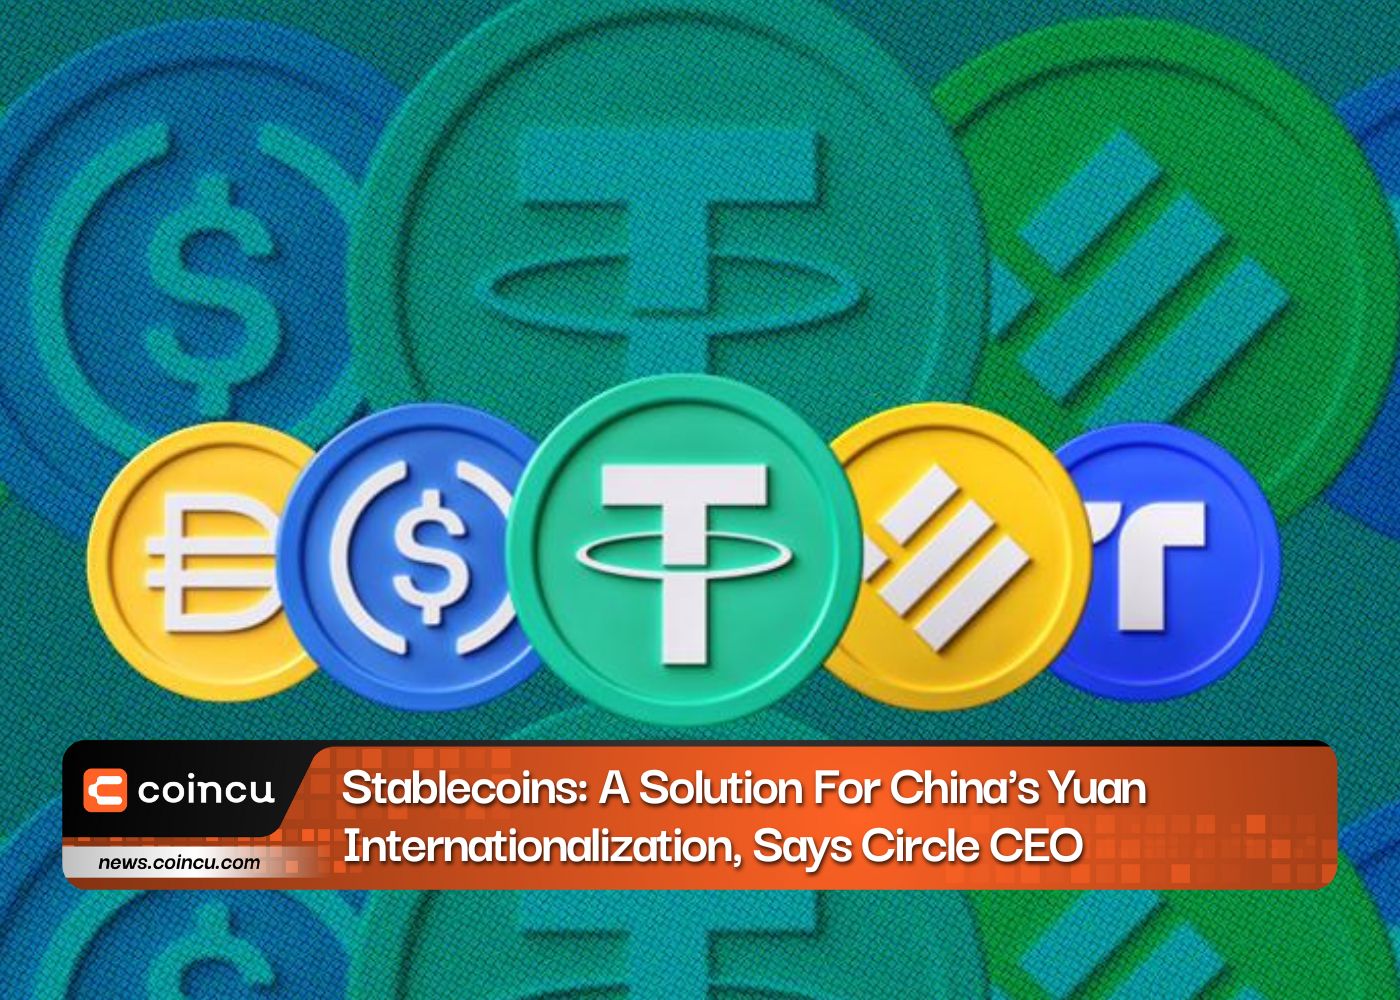 CEO Circle cho biết Stablecoin: Giải pháp cho việc quốc tế hóa đồng Nhân dân tệ của Trung Quốc